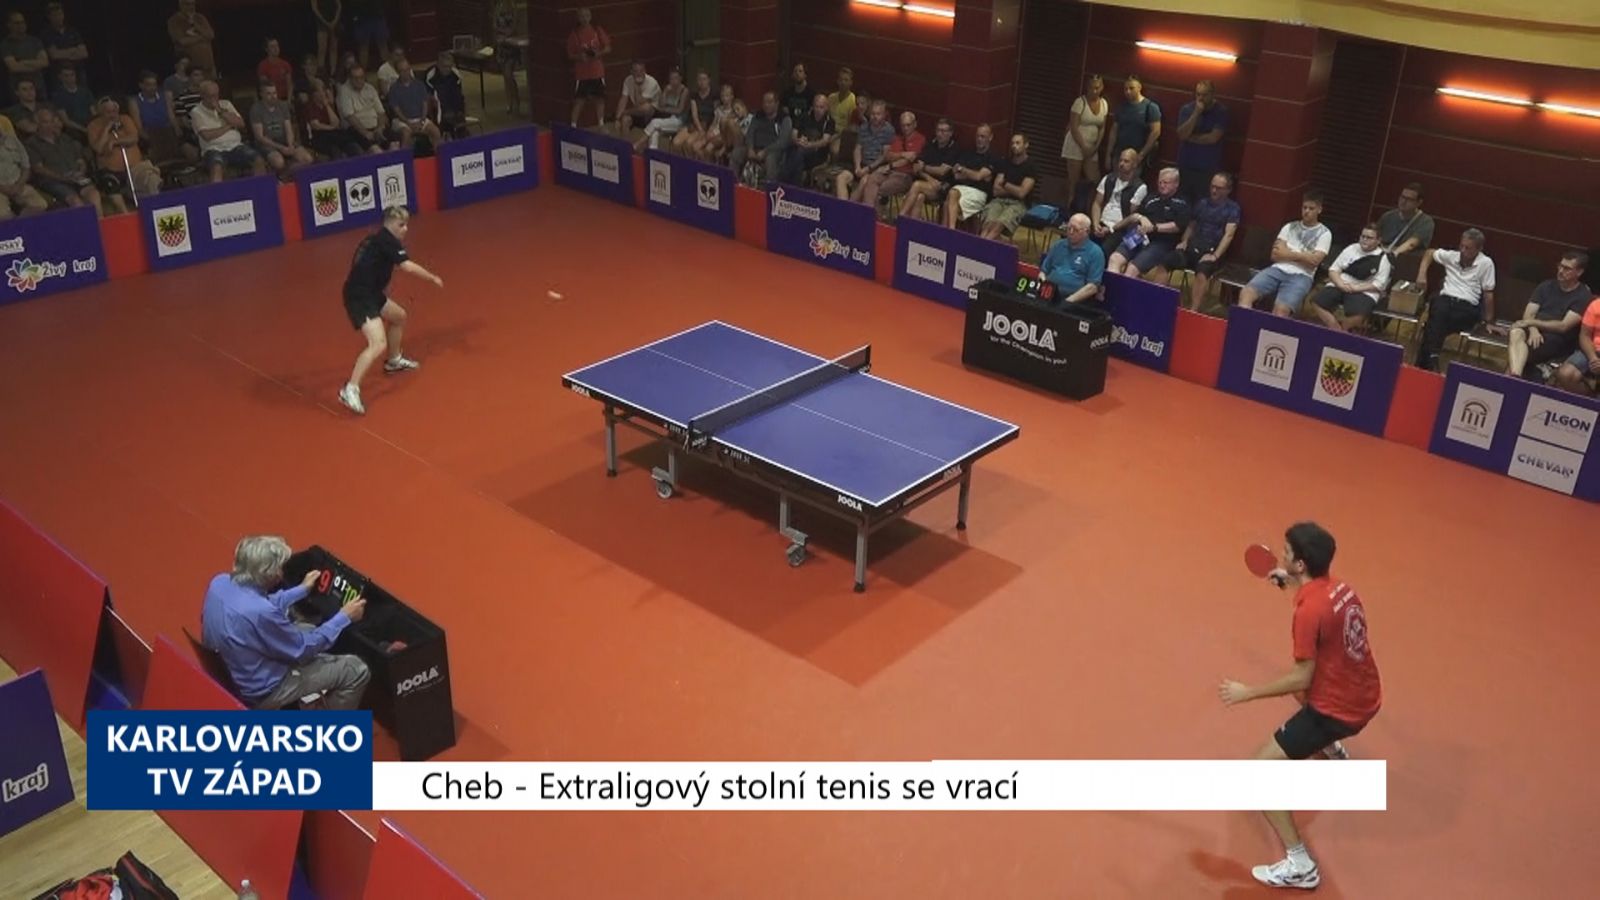 Cheb: Extraligový stolní tenis se vrací (TV Západ)